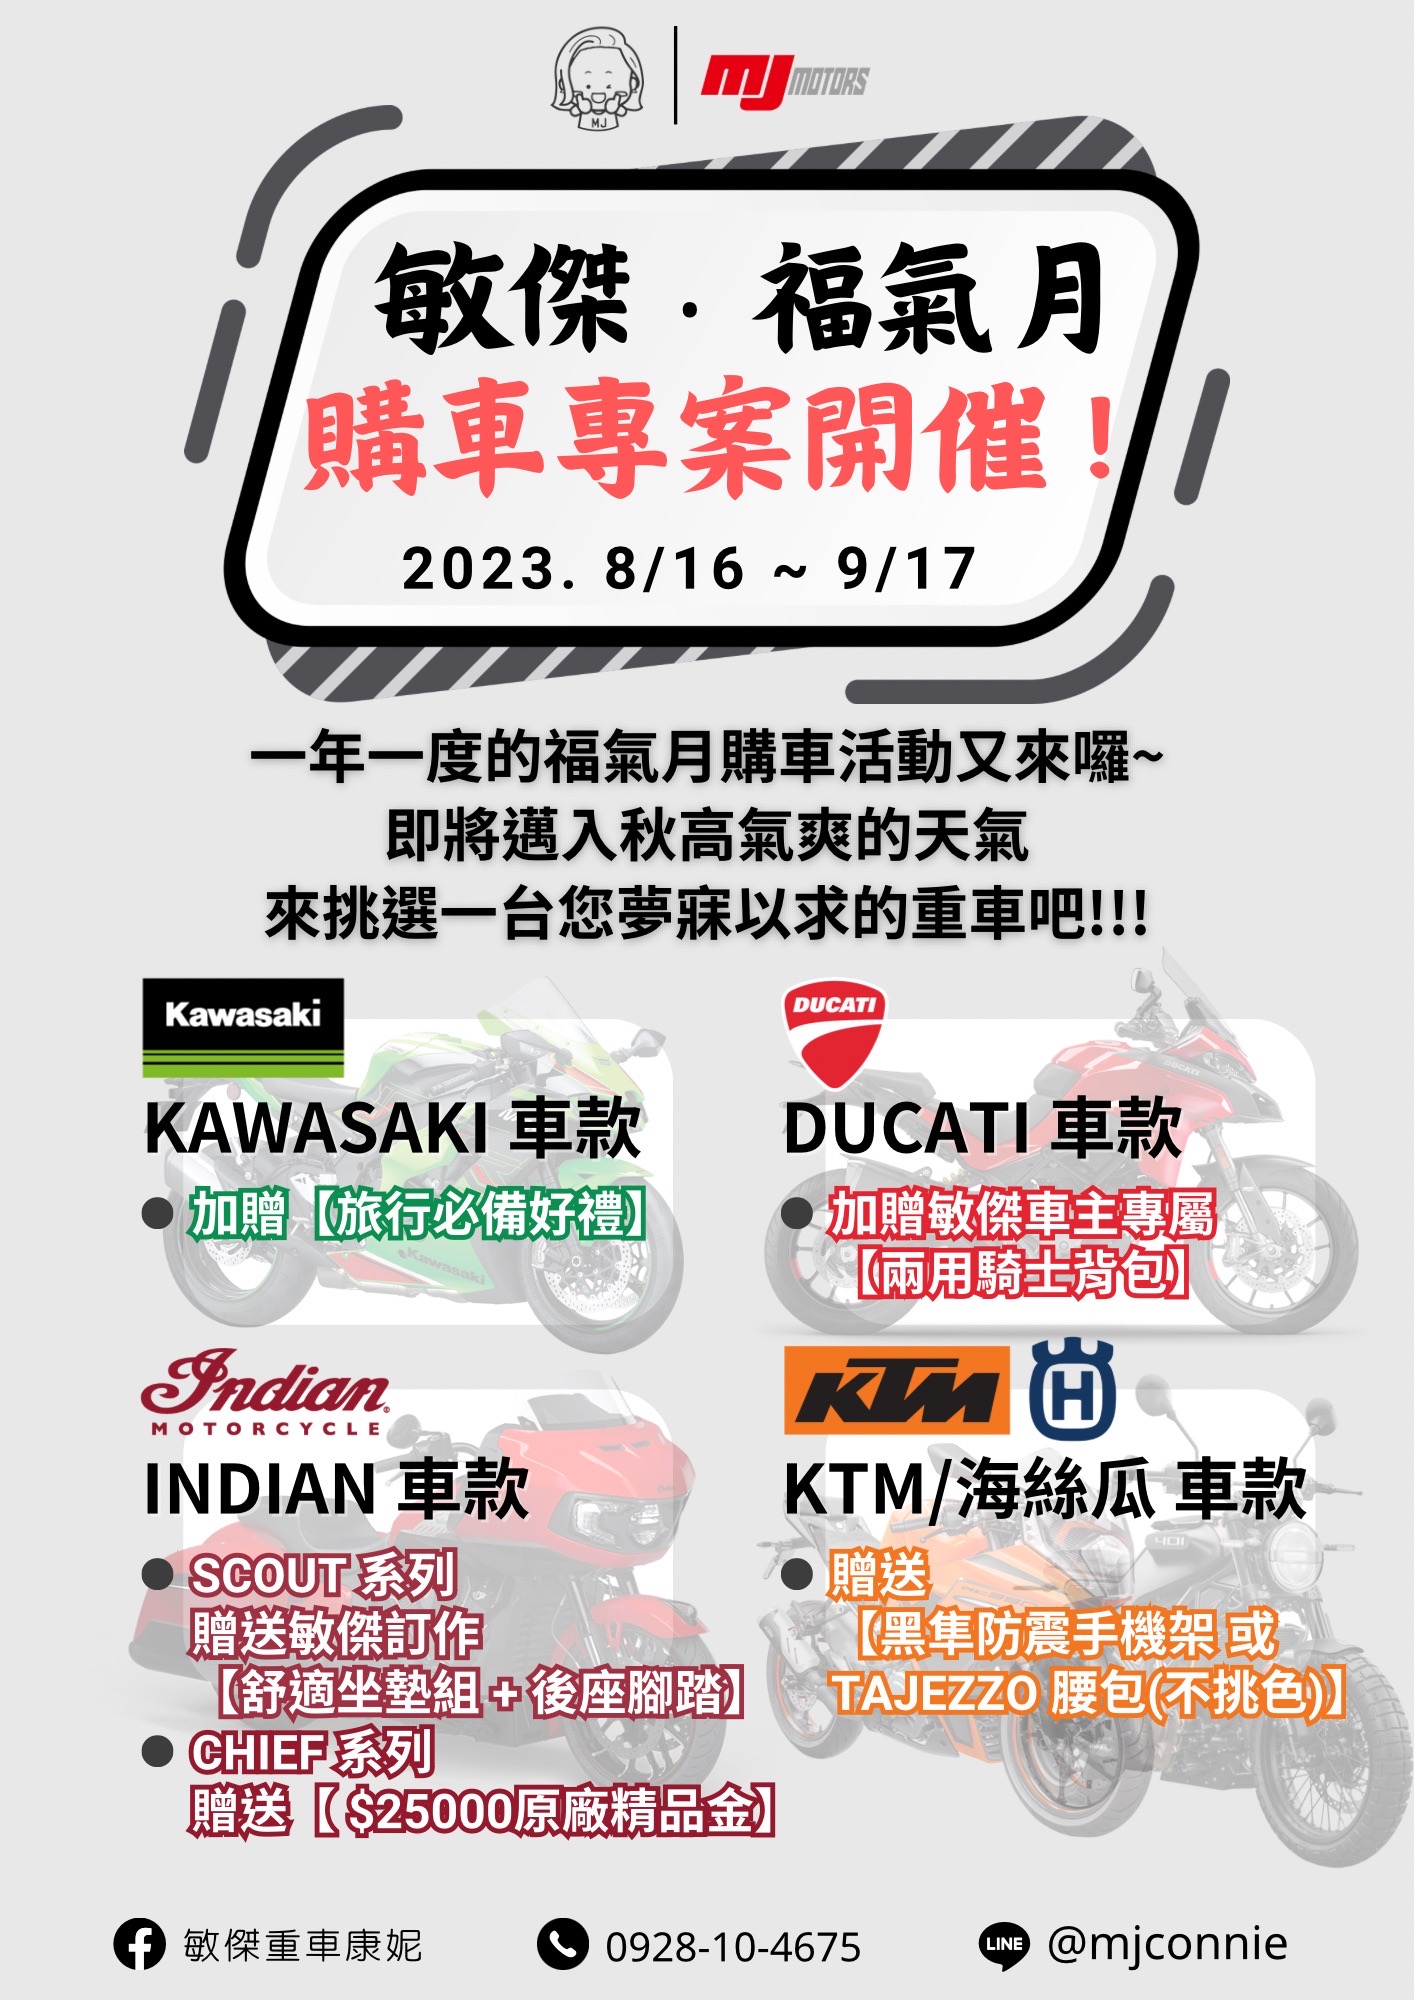 KAWASAKI Z900RS新車出售中 『敏傑康妮』Kawasaki Z900RS 正2023 年份 高額60萬36期零利率 吉祥月送旅行套組 | 敏傑車業資深銷售專員 康妮 Connie